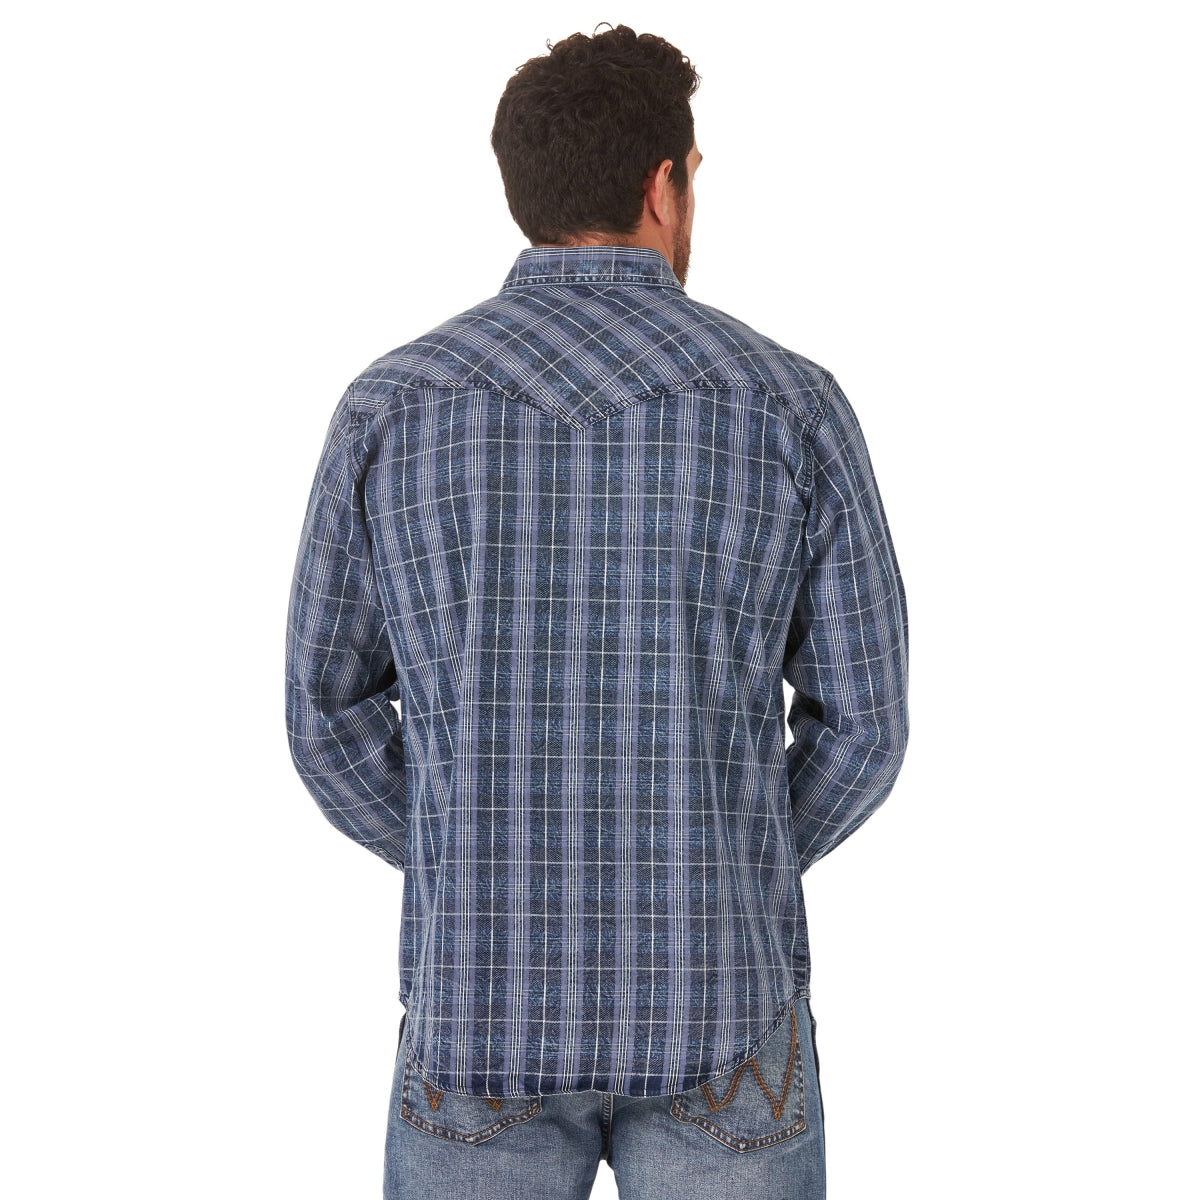 MVR546B Wrangler Men's Retro Premium Long Sleeve Shirt